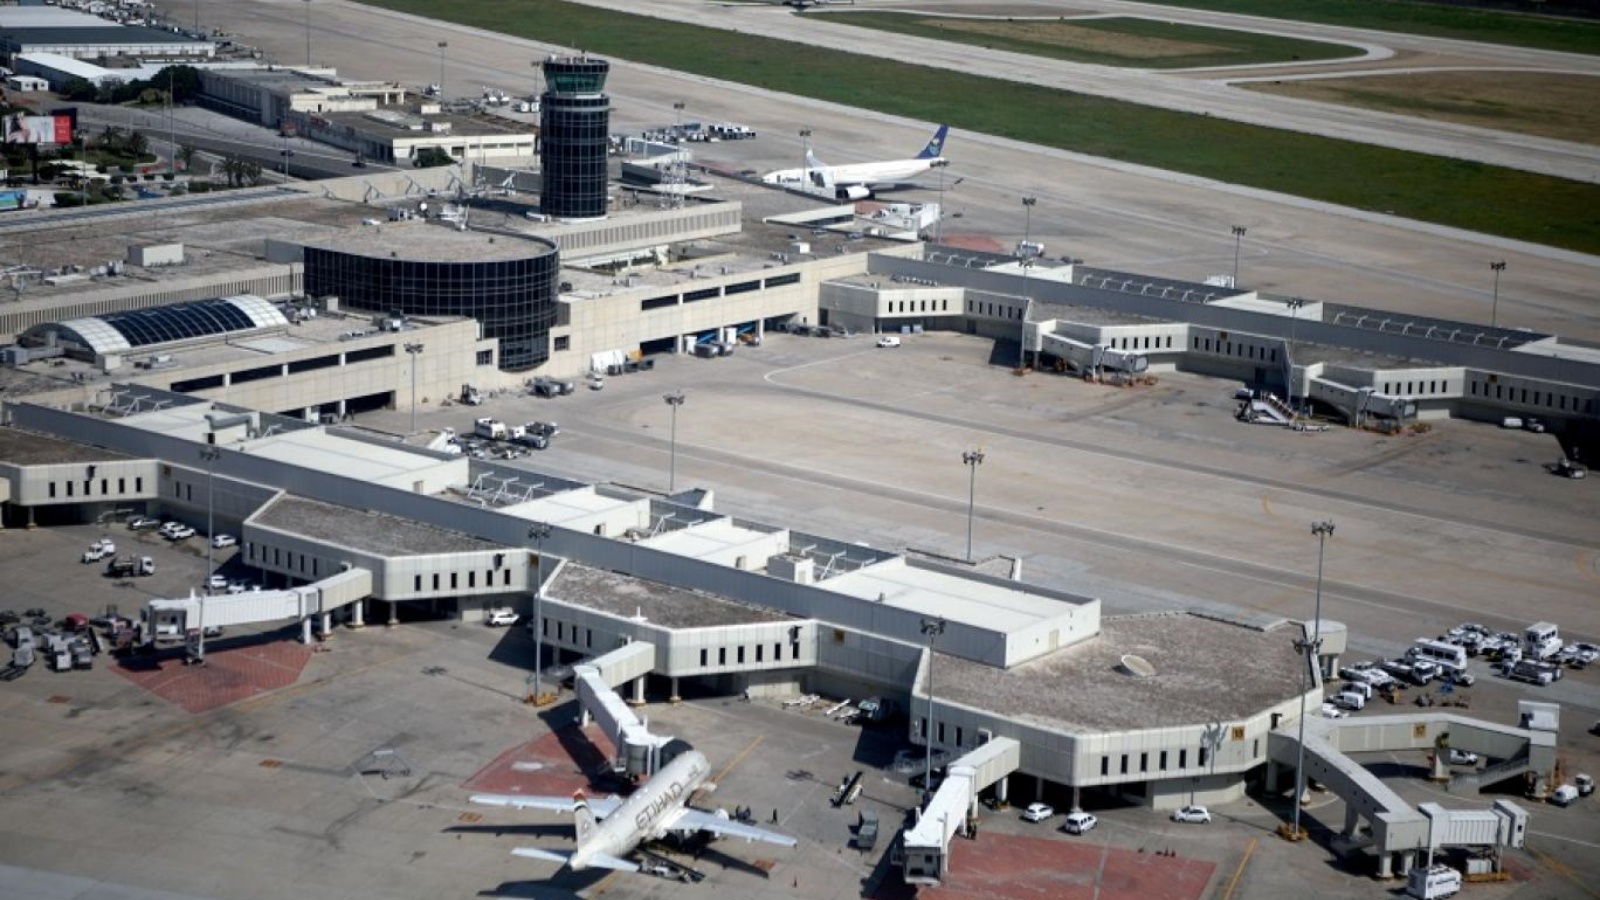 تجاوزت حركة المسافرين الفعلية طاقة مطار بيروت الاستيعابية ووصلت ذروتها إلى 8.8 مليون مسافر والصورة لمجسم التوسعة المقترحة